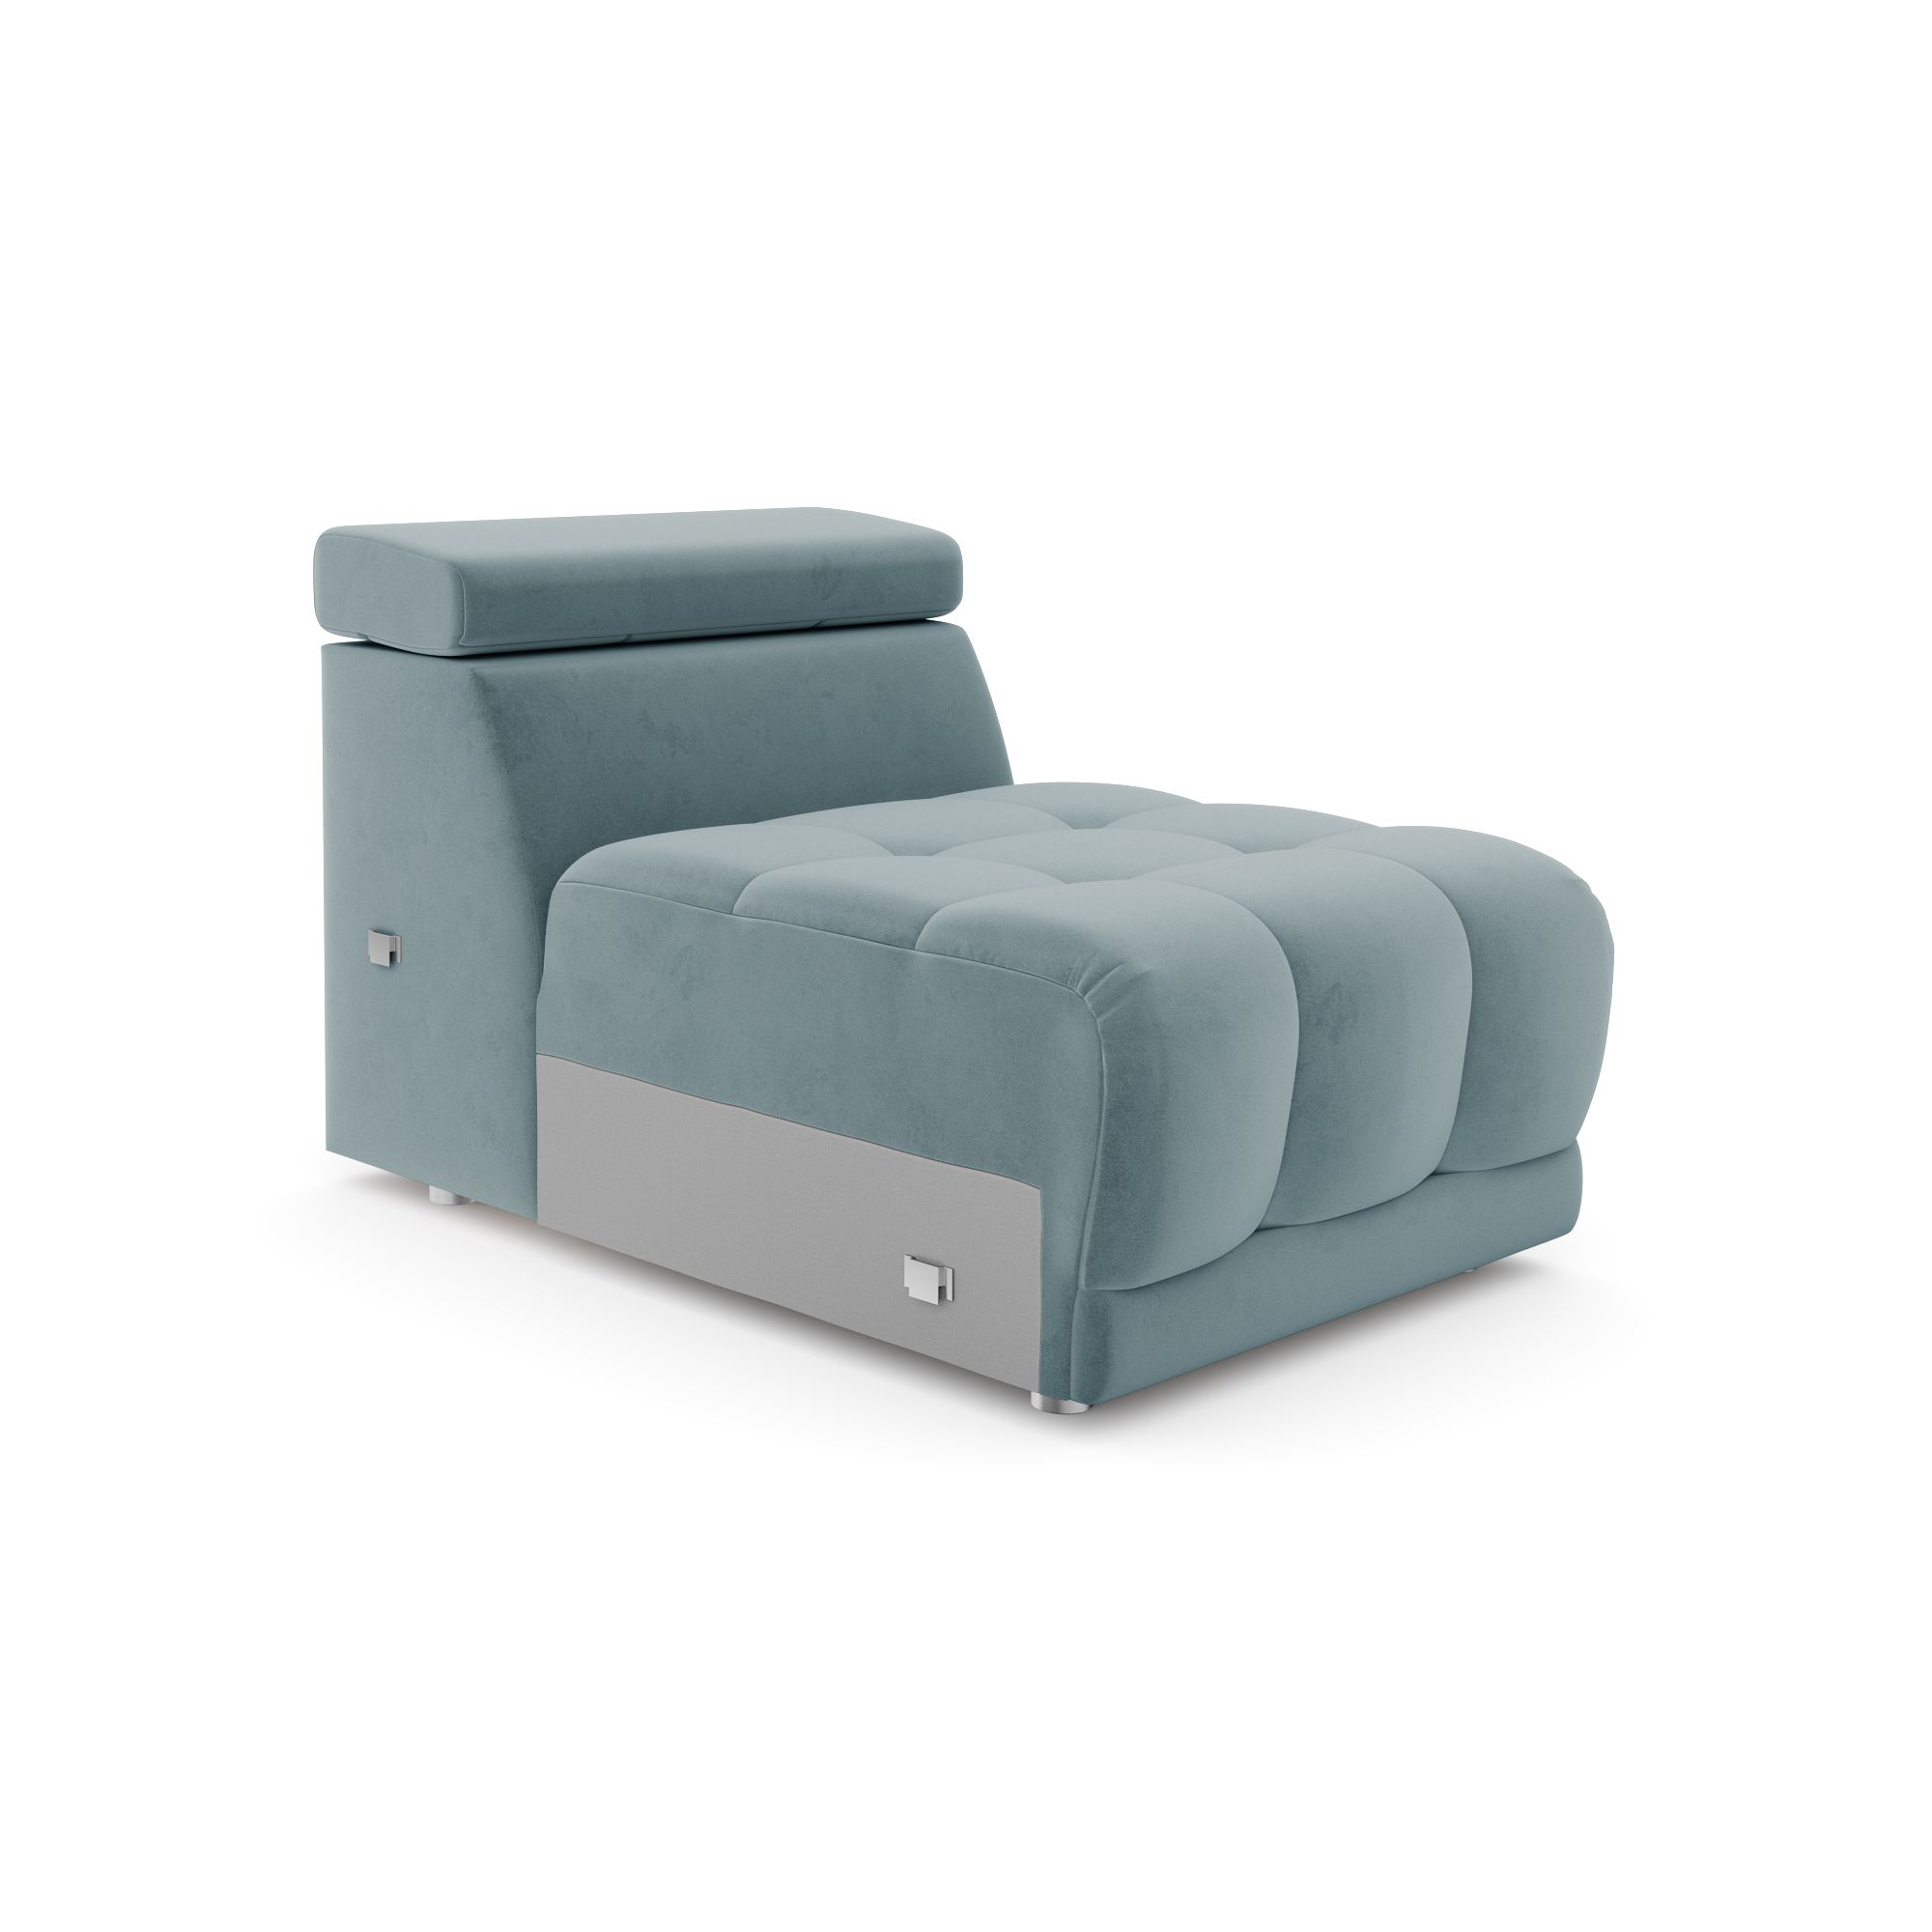 Модуль дивана Флорида кресло без подлокотников, кФЛ03.вл53.53у